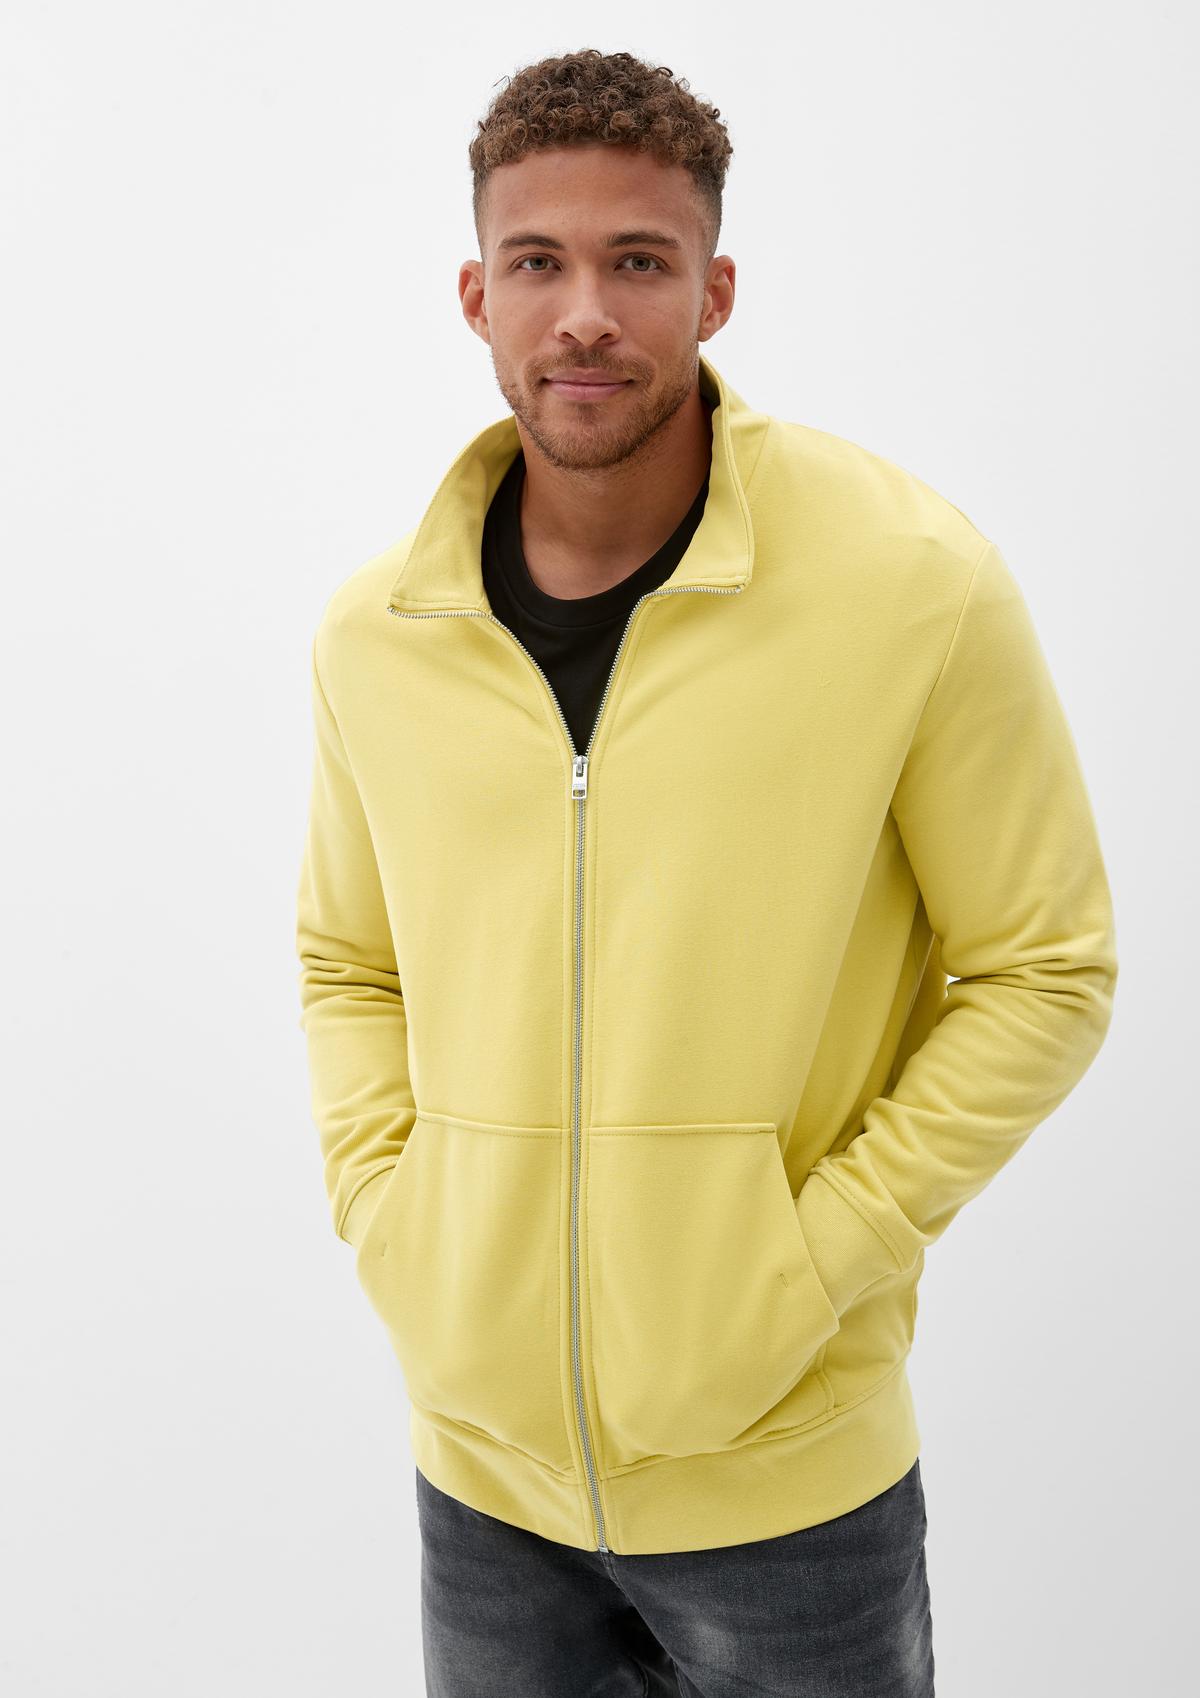 Sweatshirt Jacket - light yellow